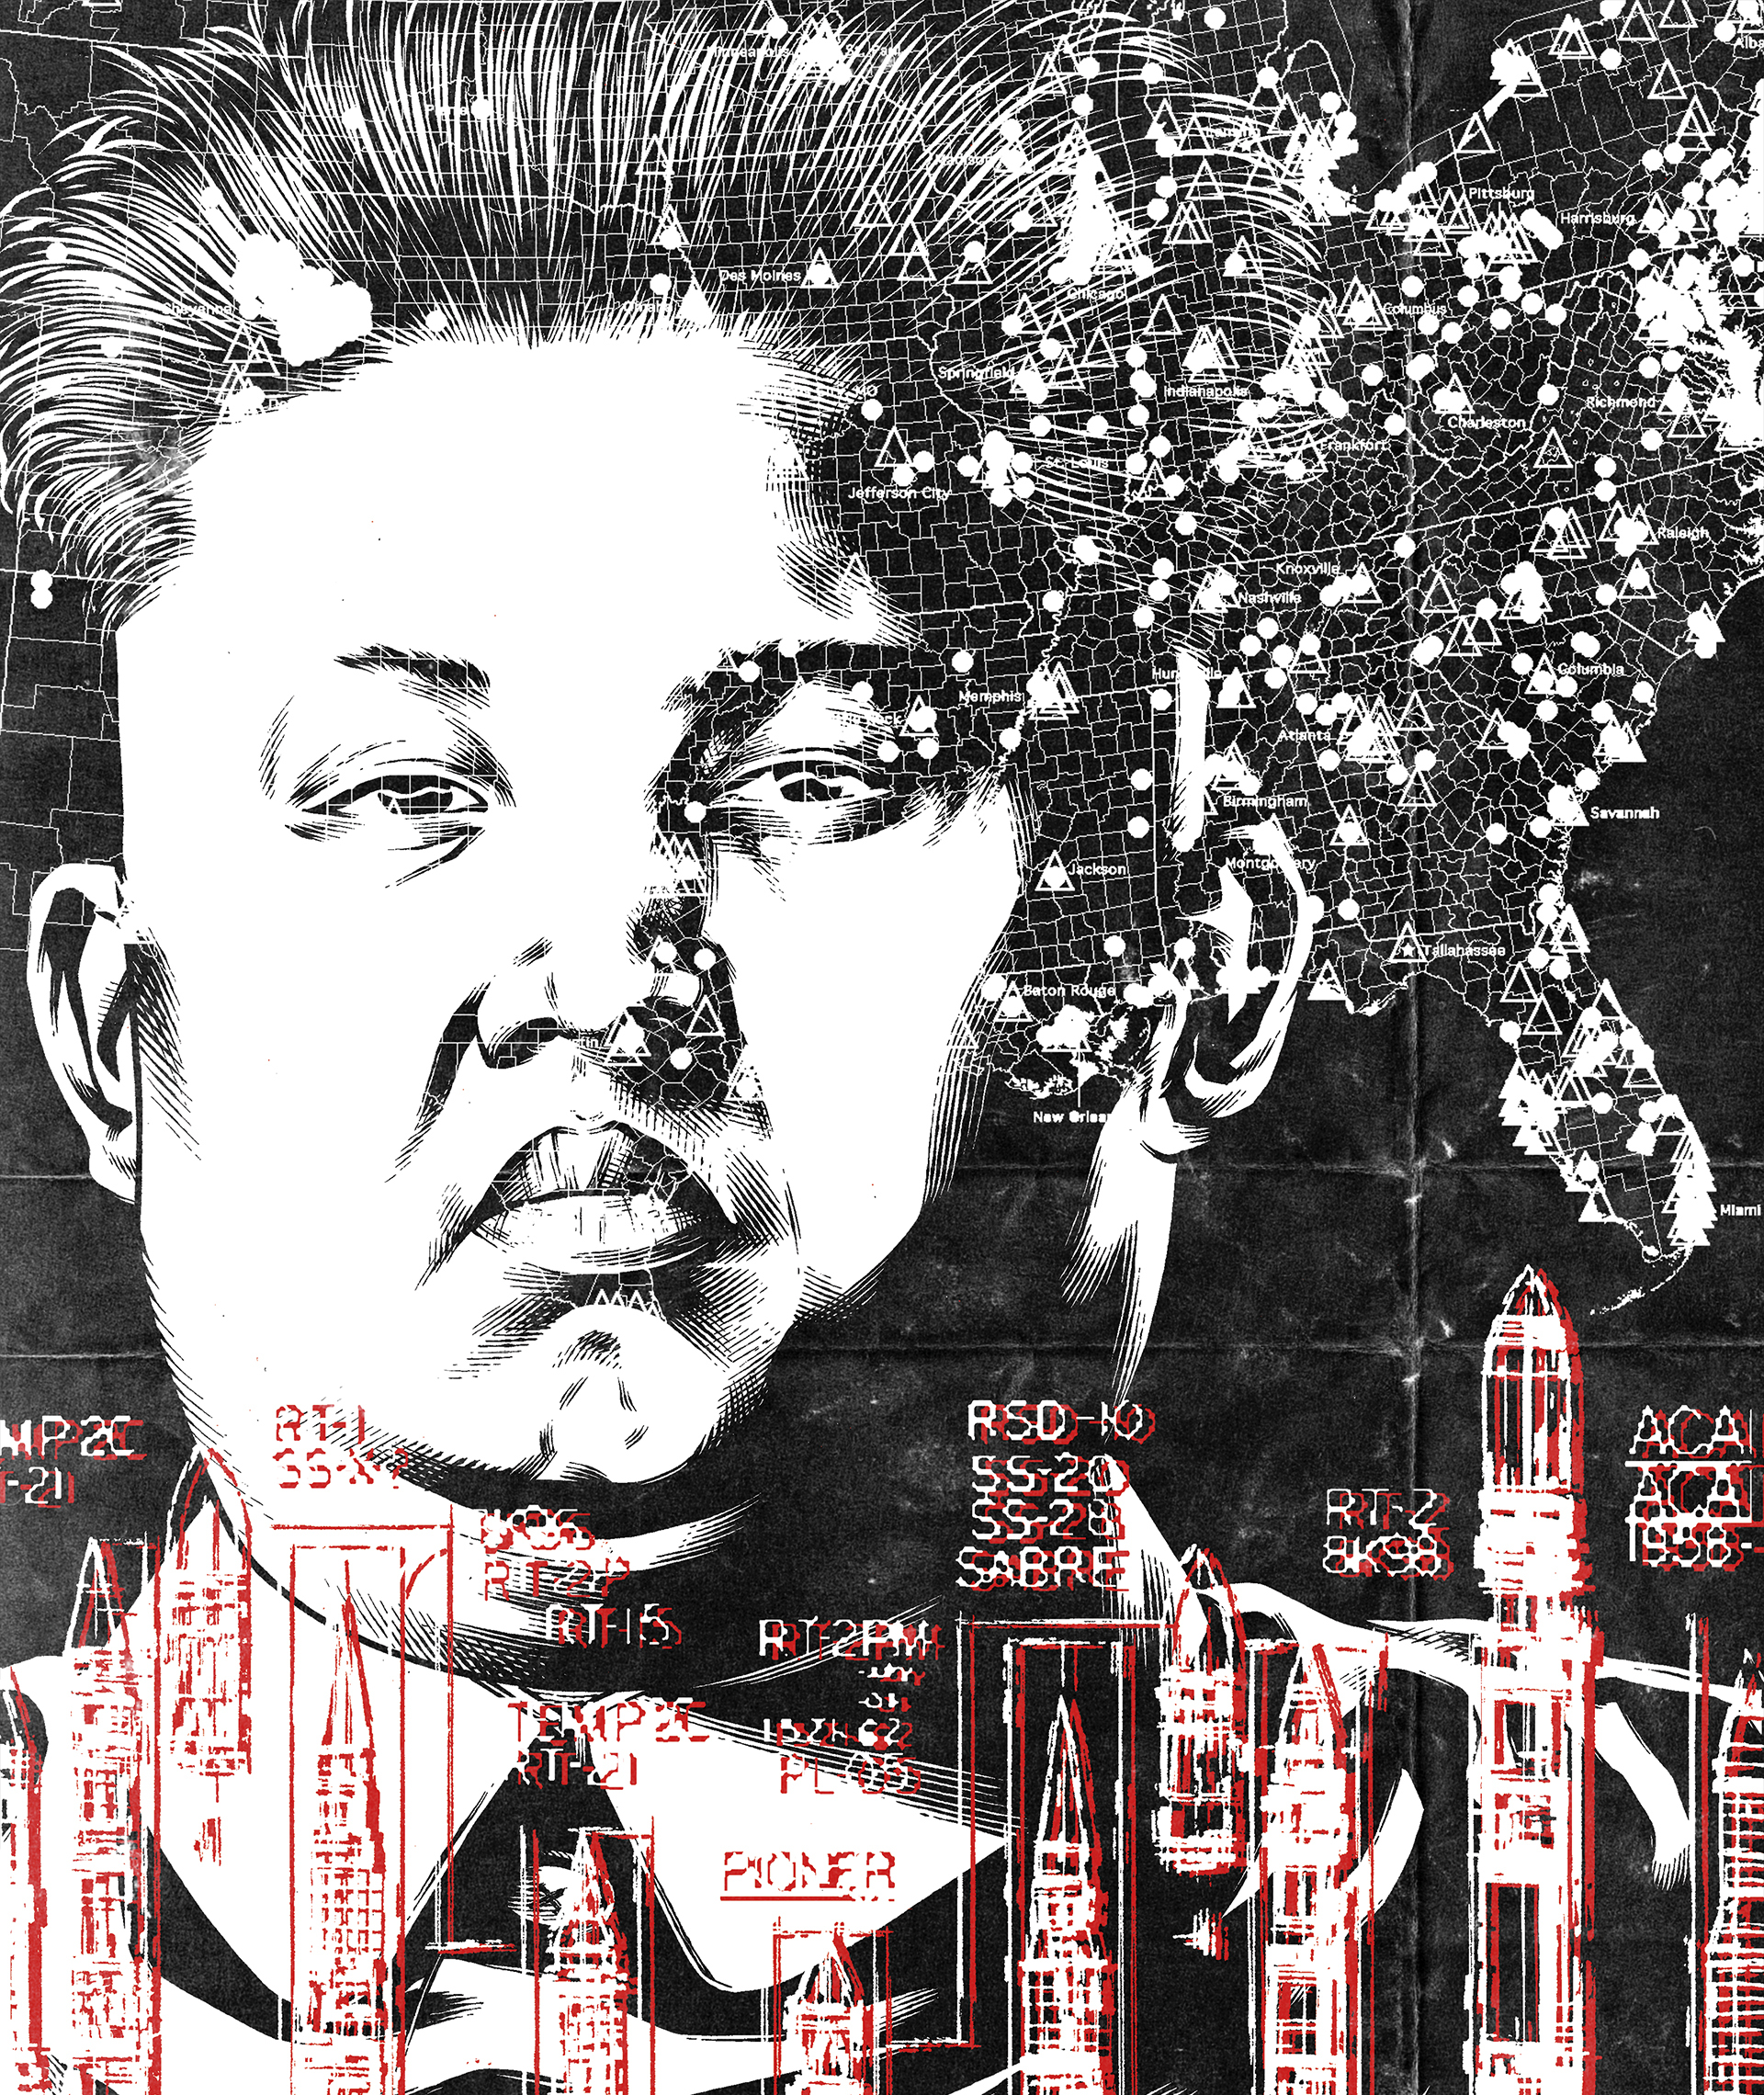 Infiltrada en el régimen de Kim Jong-un, el dictador que viaja con un váter: "Le gusta que el mundo le considere una amenaza"